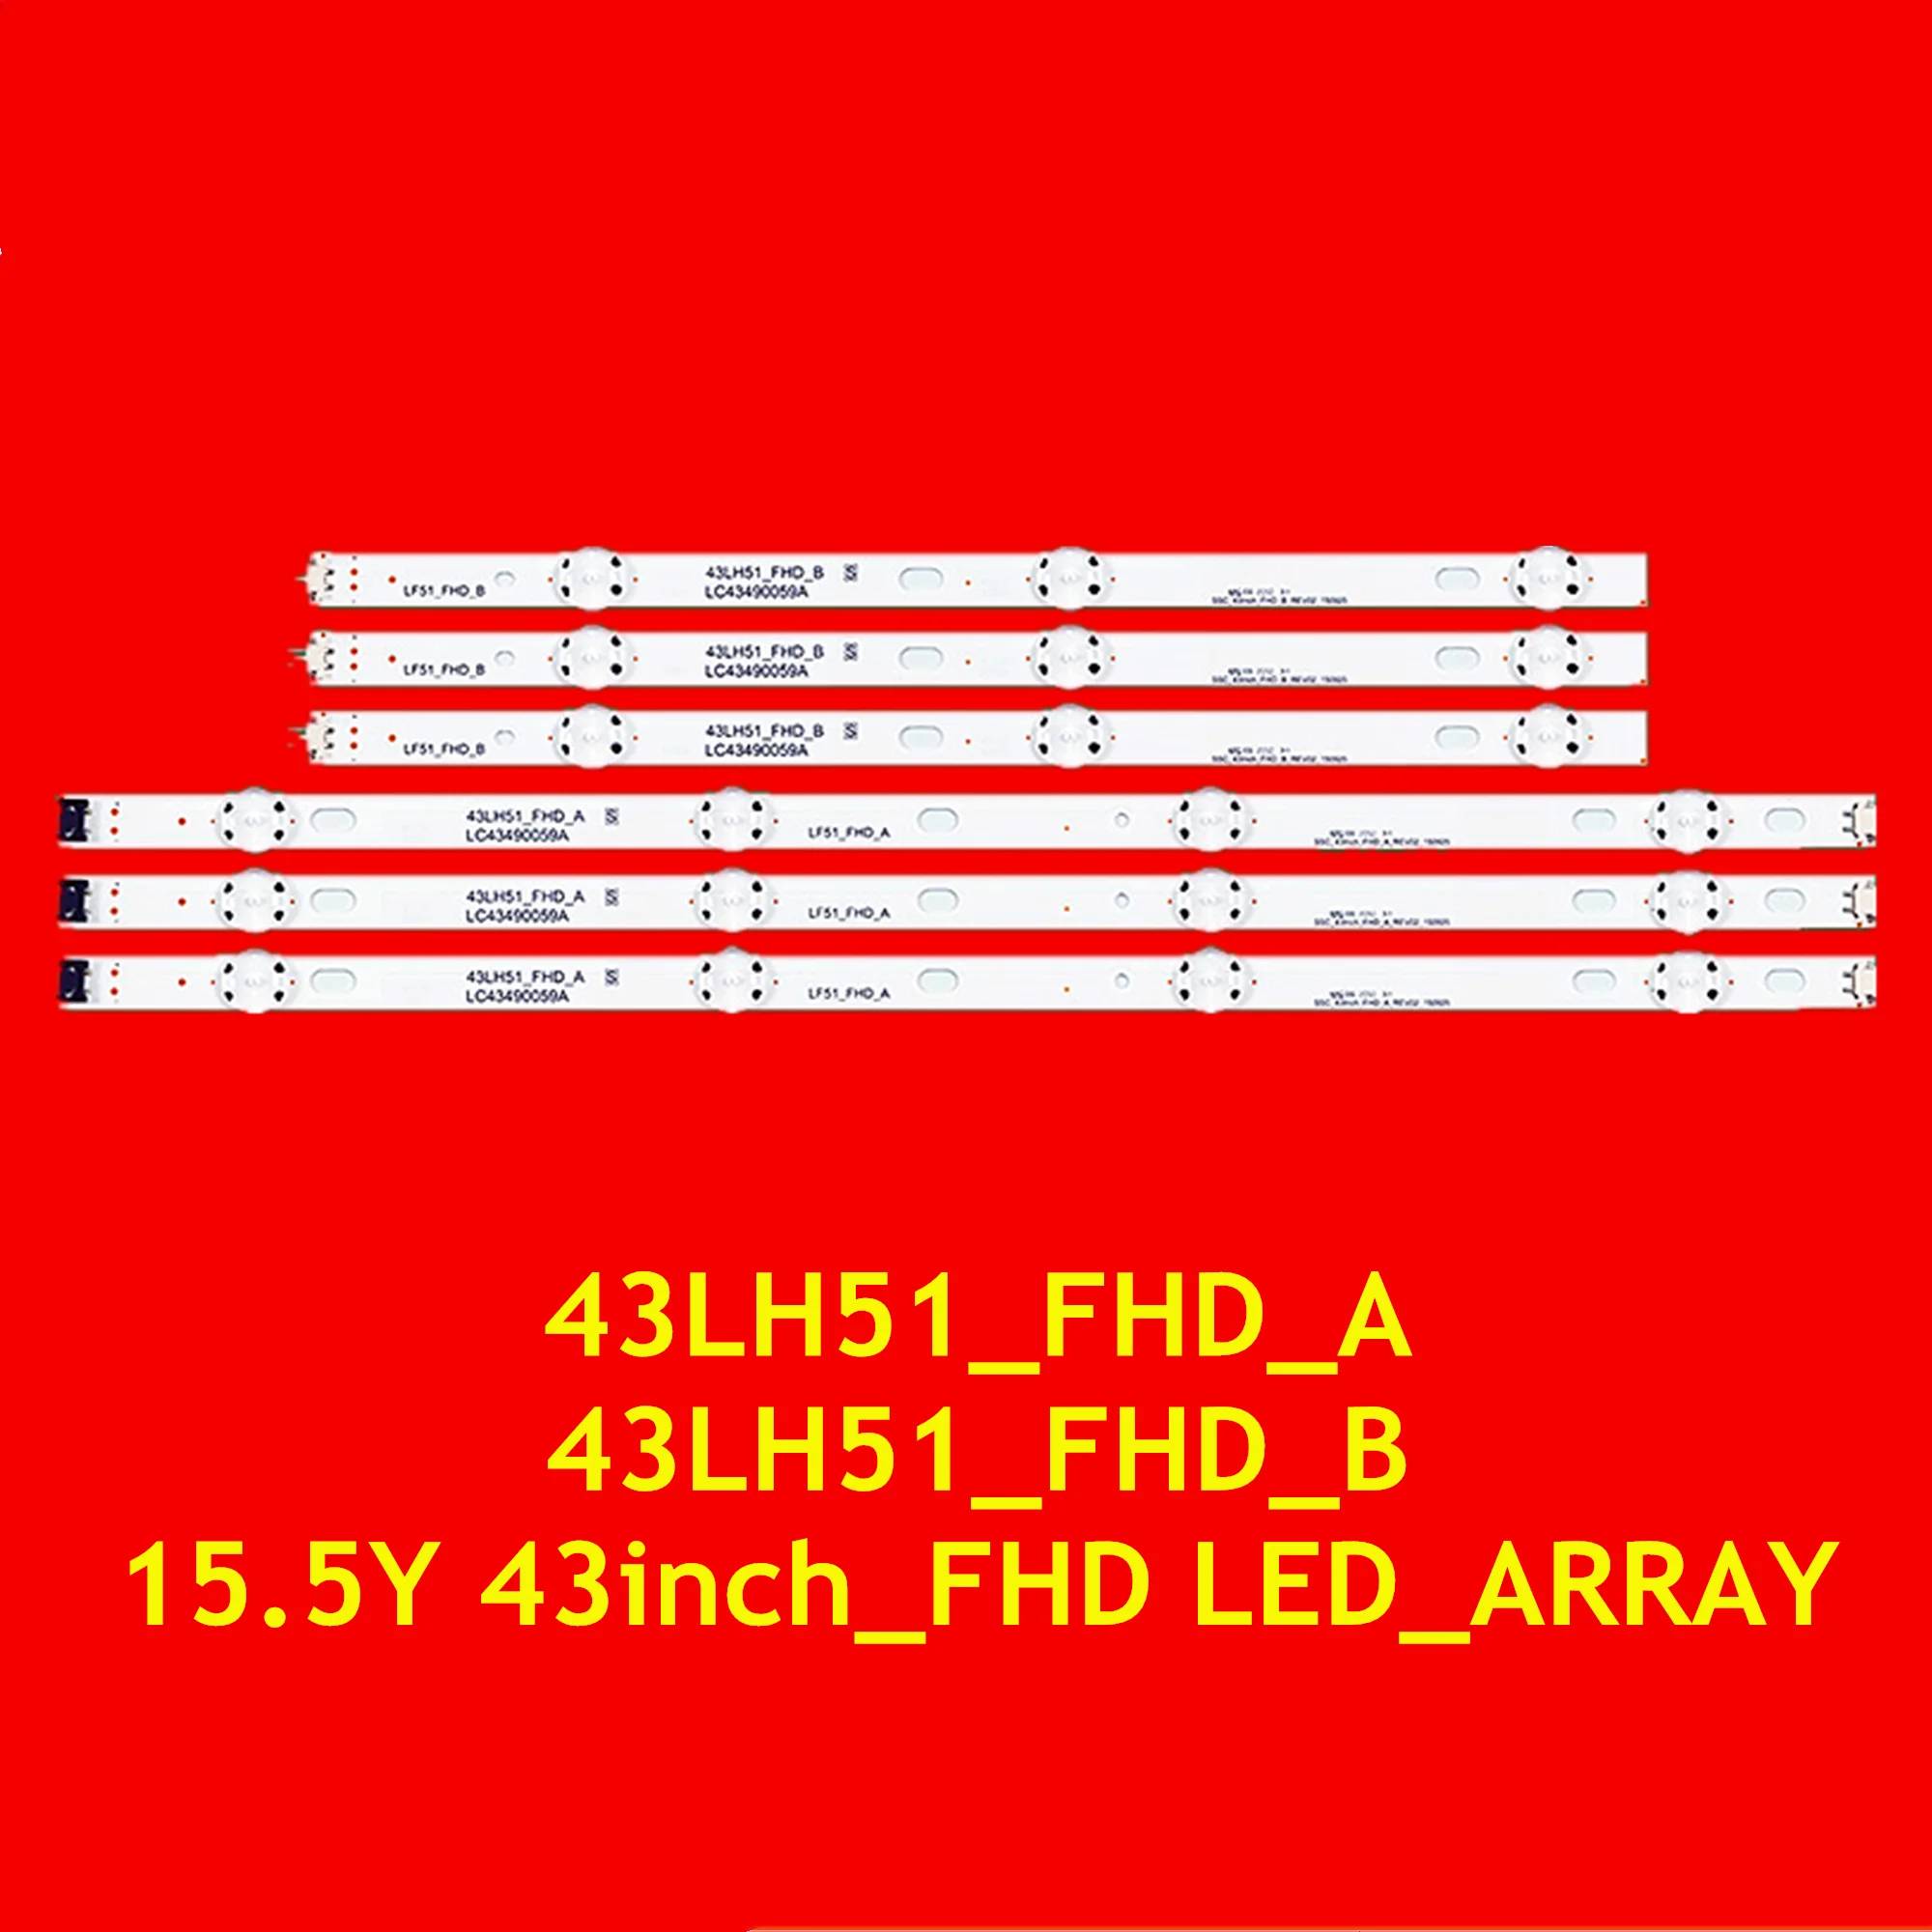 Светодиодная лента для 43LH510V 43LH520V 43LH570V 43LH590V 43LH5100 43LH5600 43LH5700 43LH5900 43LH51_FHD_A B